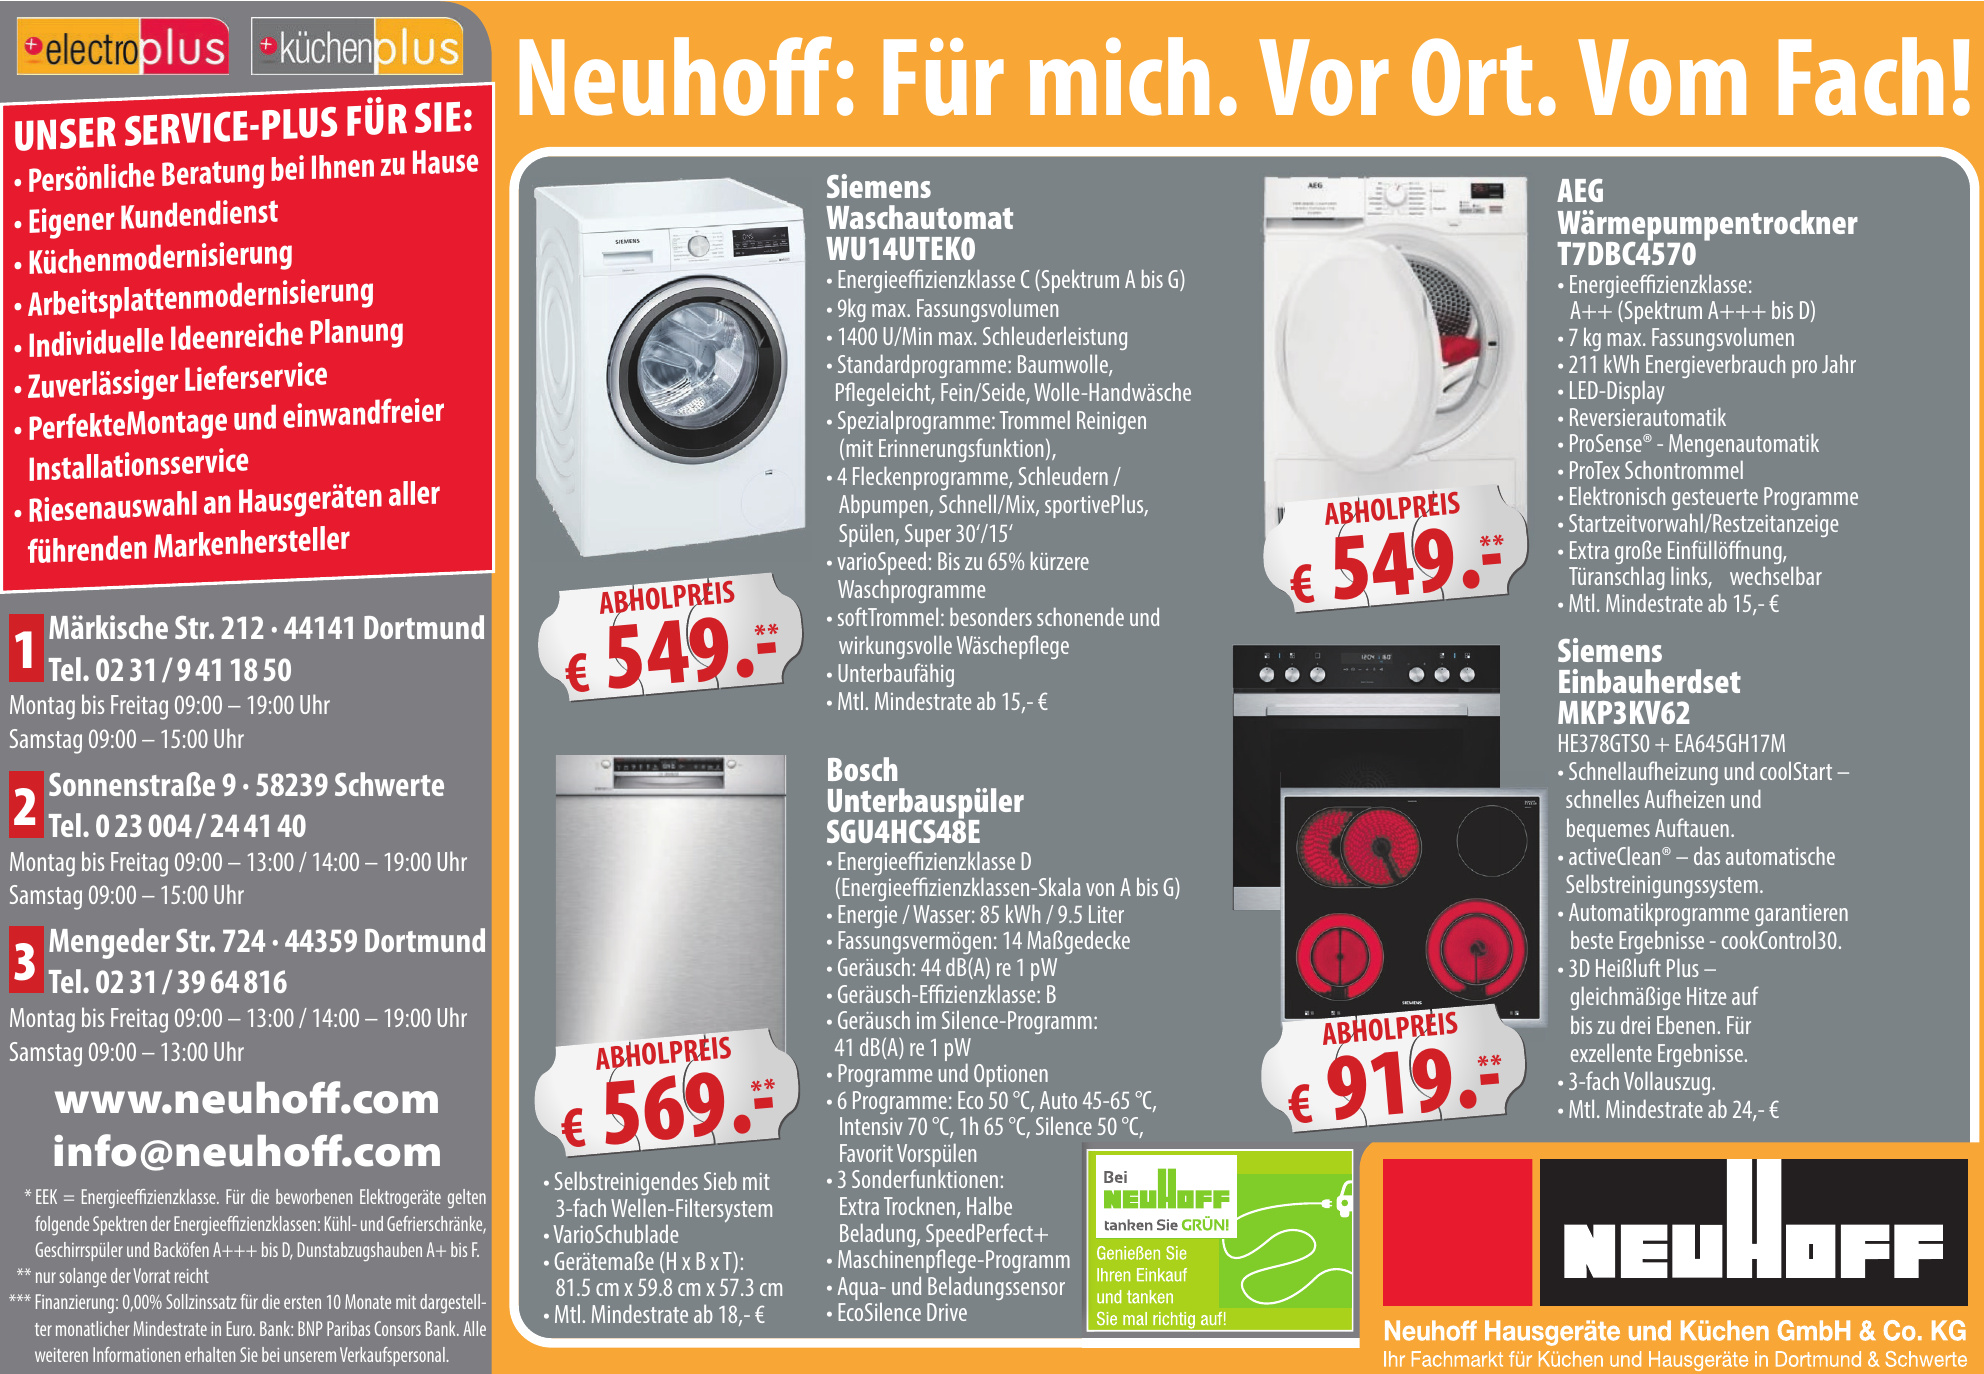 Neuhoff Hausgeräte und Küchen GmbH & Co. KG